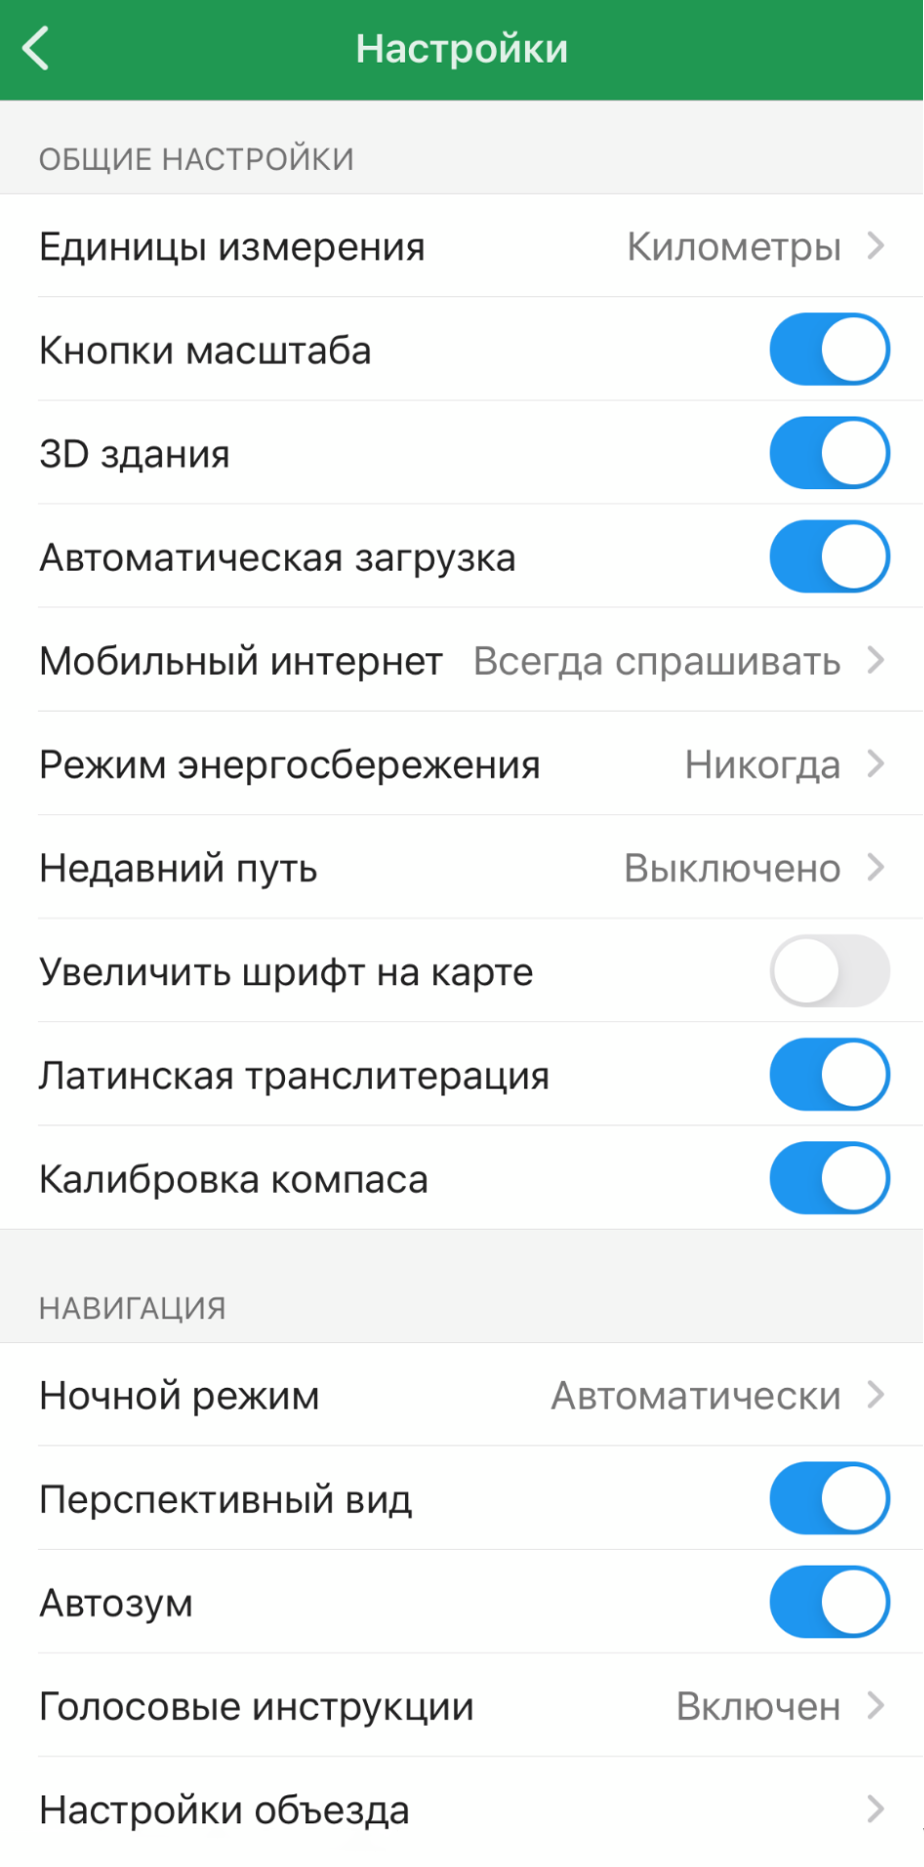 Приложение быстро работает и поддерживает русский язык. Я пользовался им во время поездки в Ереван, чтобы добраться из центра города в отель